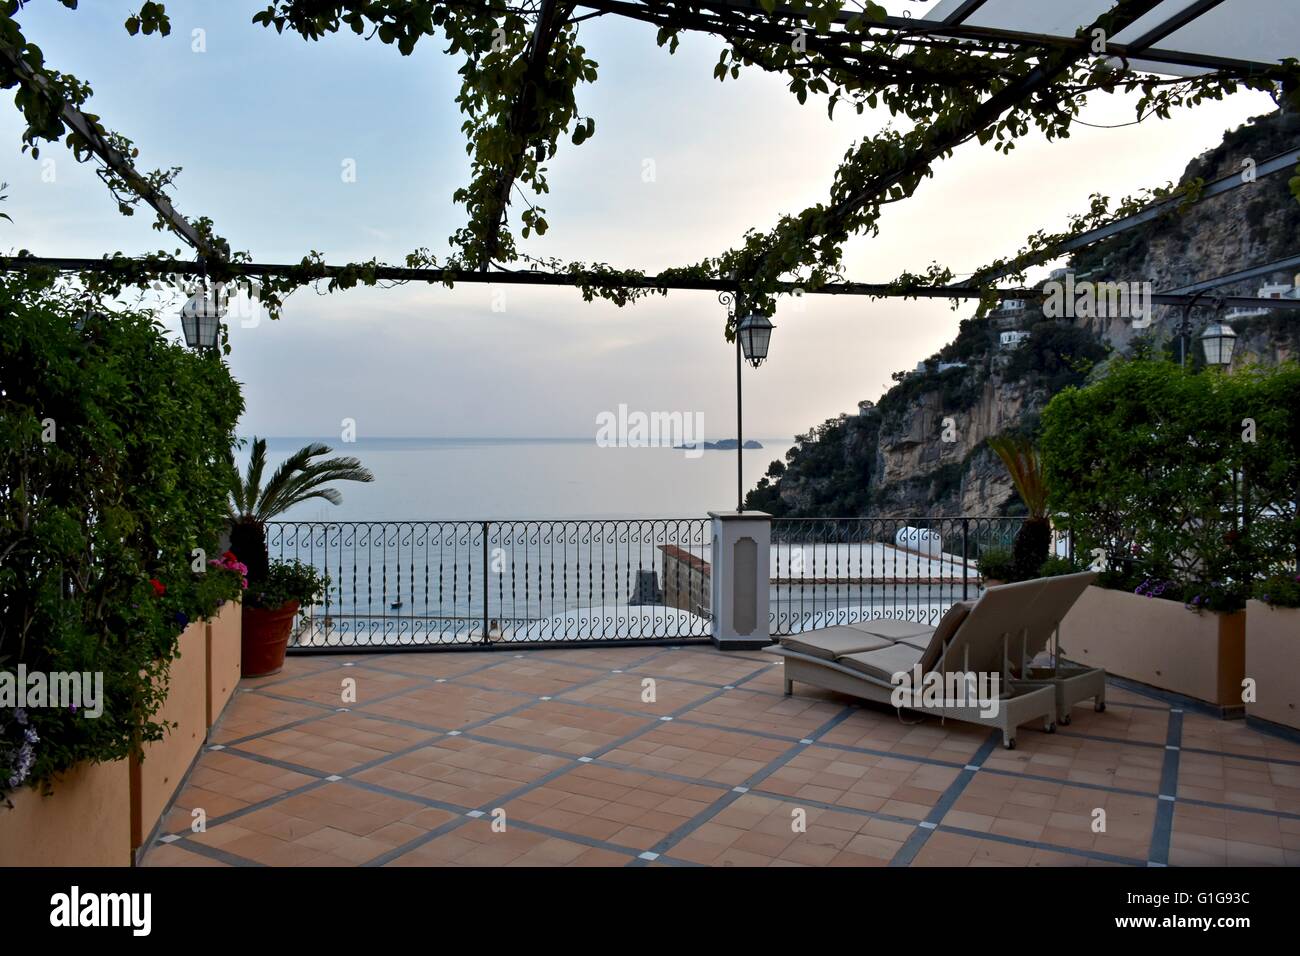 A beautiful balcony overlooking the coastal town of Positano Italy Stock Photo